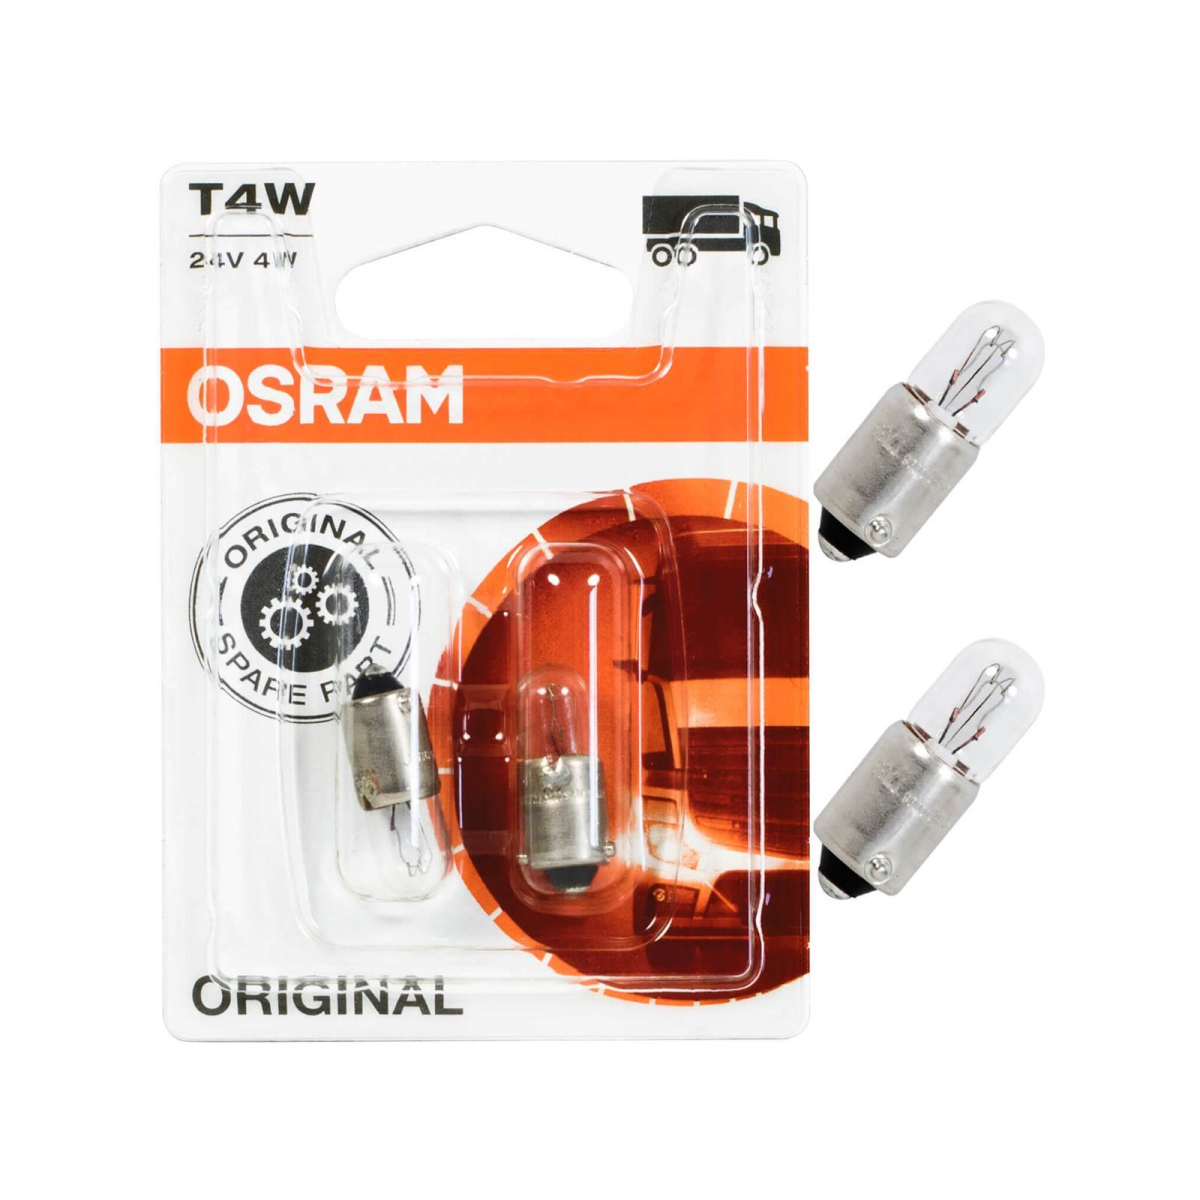 Osram T4W Original Line 3930-02B 24V LKW-Lampen 2 St.Doppelblister